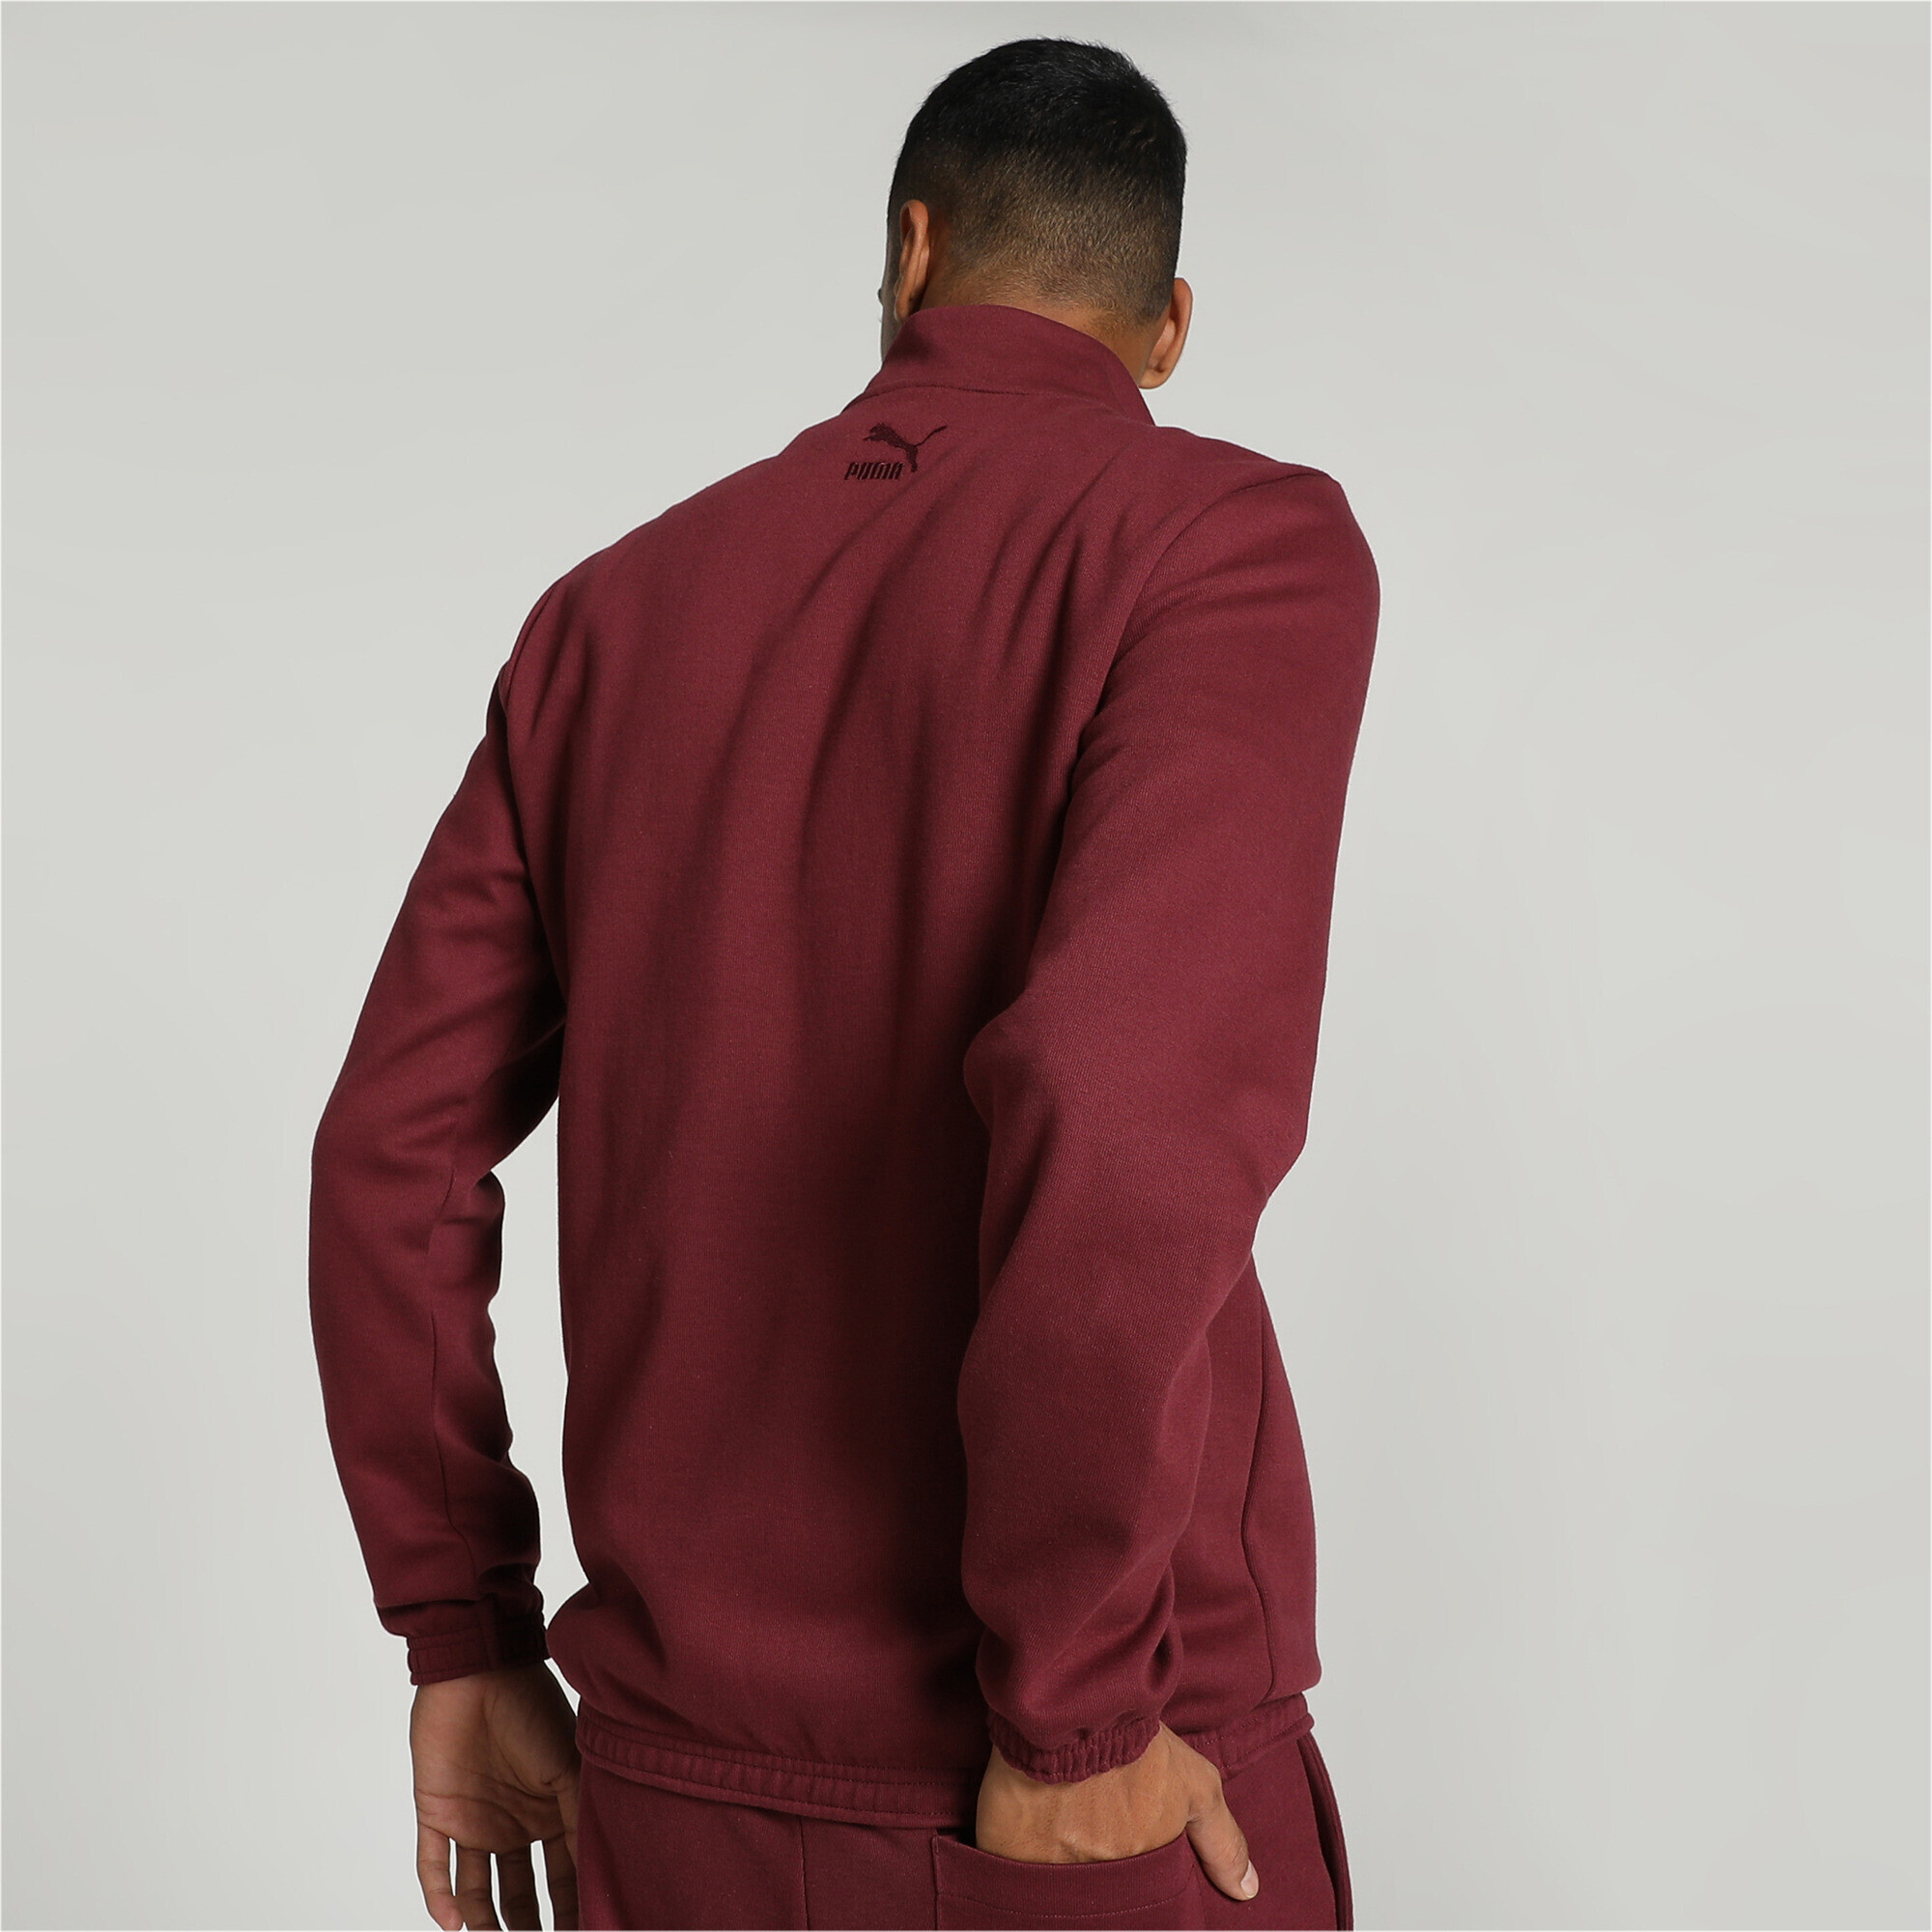 Men's PUMA X One8 Half Zip Jacket In 120 - Red, Size Medium